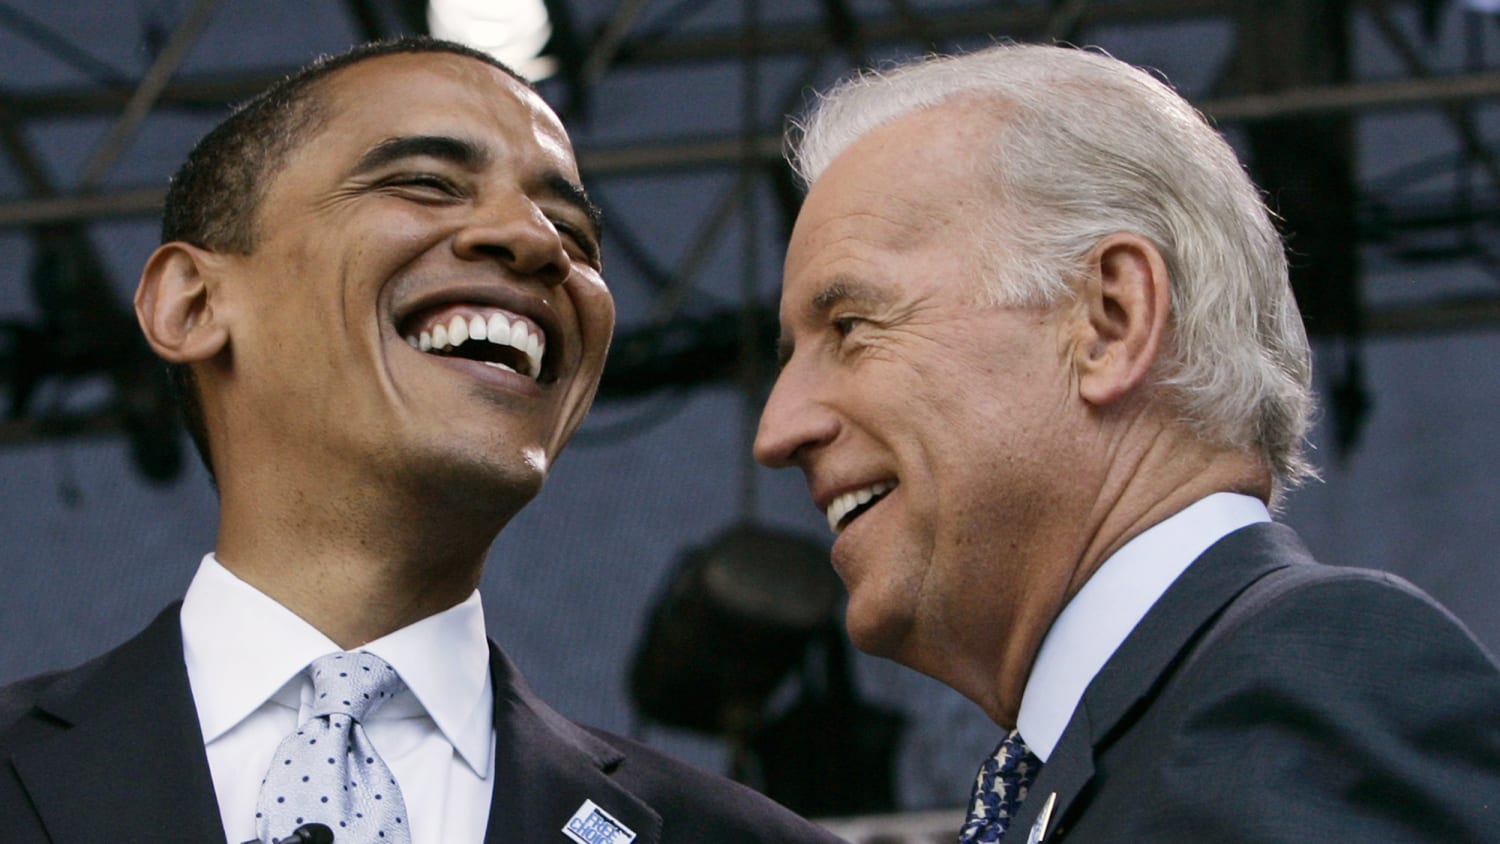 ressource kom videre Kilde Barack Obama's birthday tweet to Joe Biden is so bromance-y